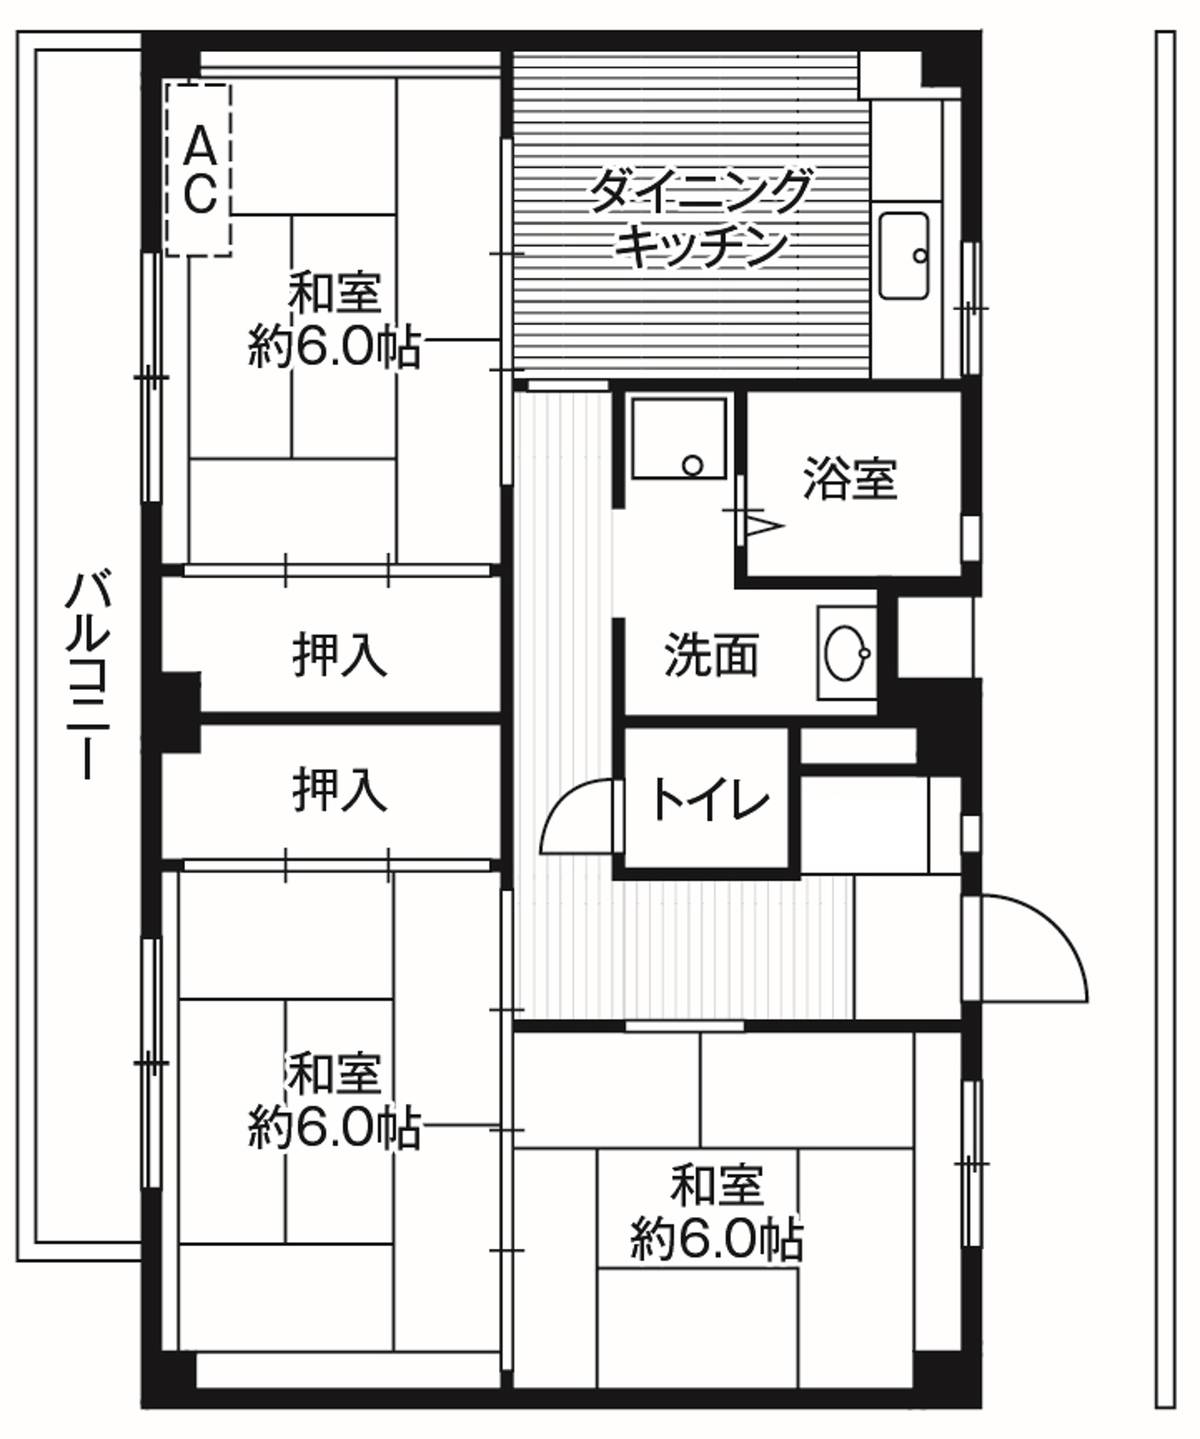 位于神奈川区的Village House 菅田的平面图3DK